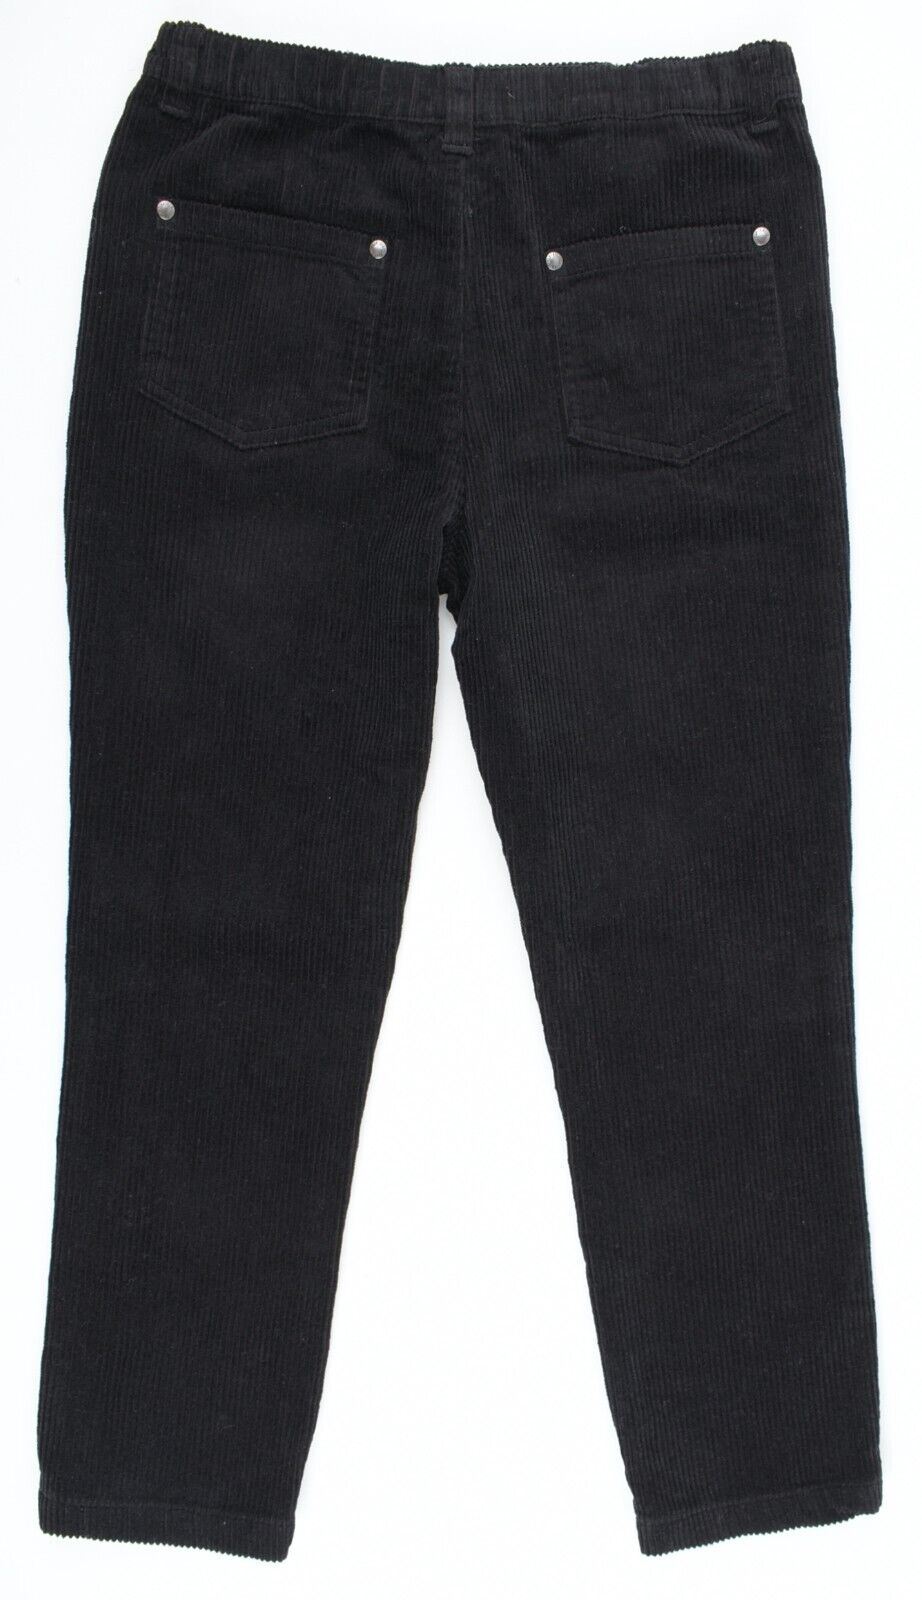 FIRETRAP Boys' Kids' Corduroy Trousers Pants, Black, size 11-12 years